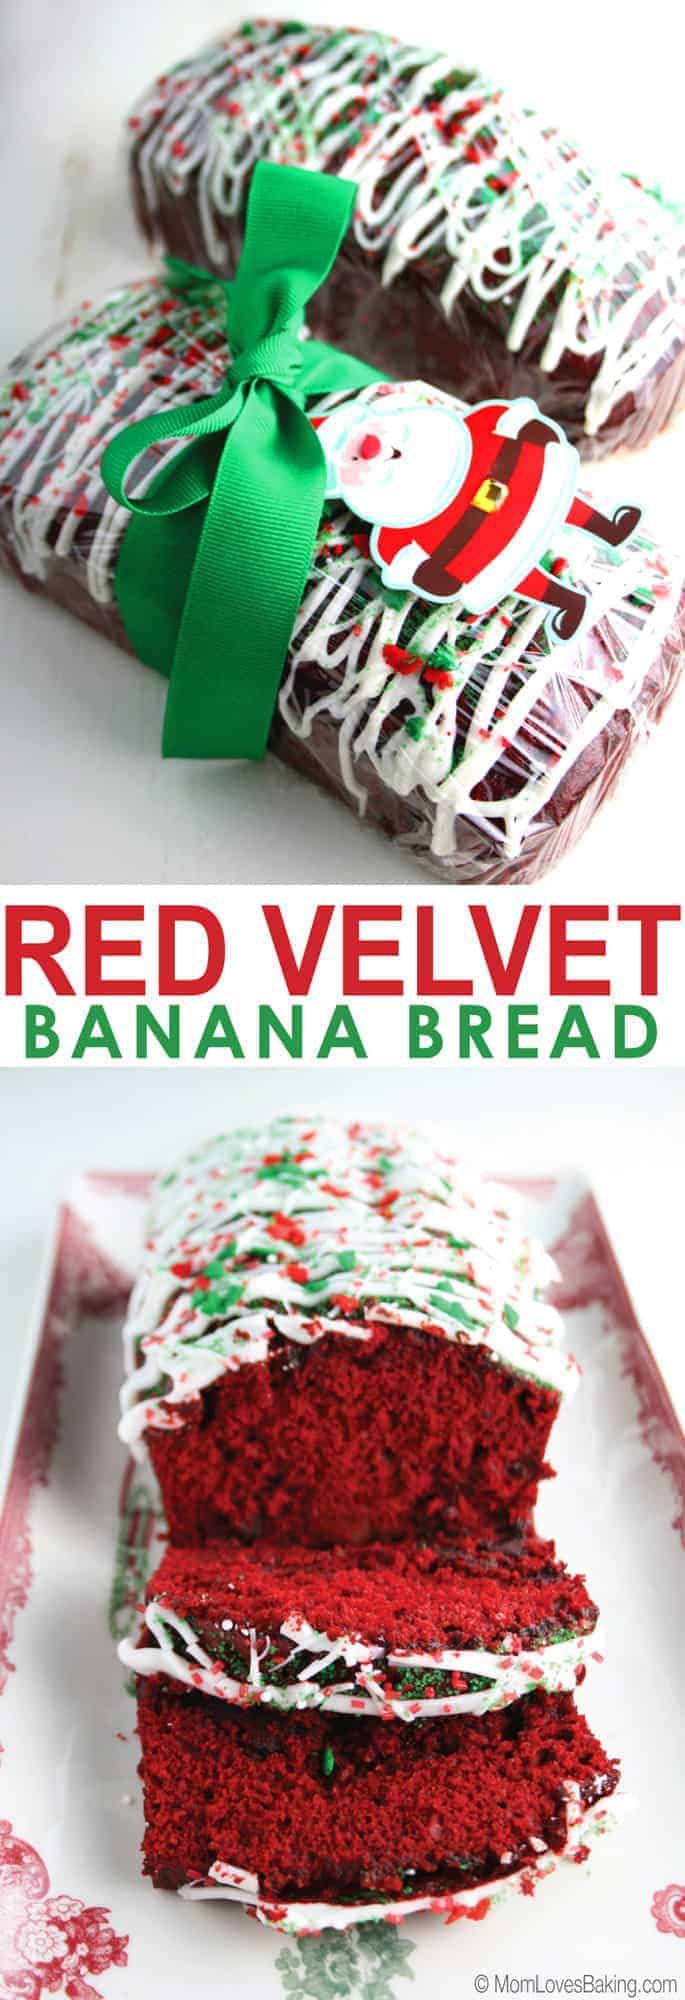 Red Velvet Banana Bread